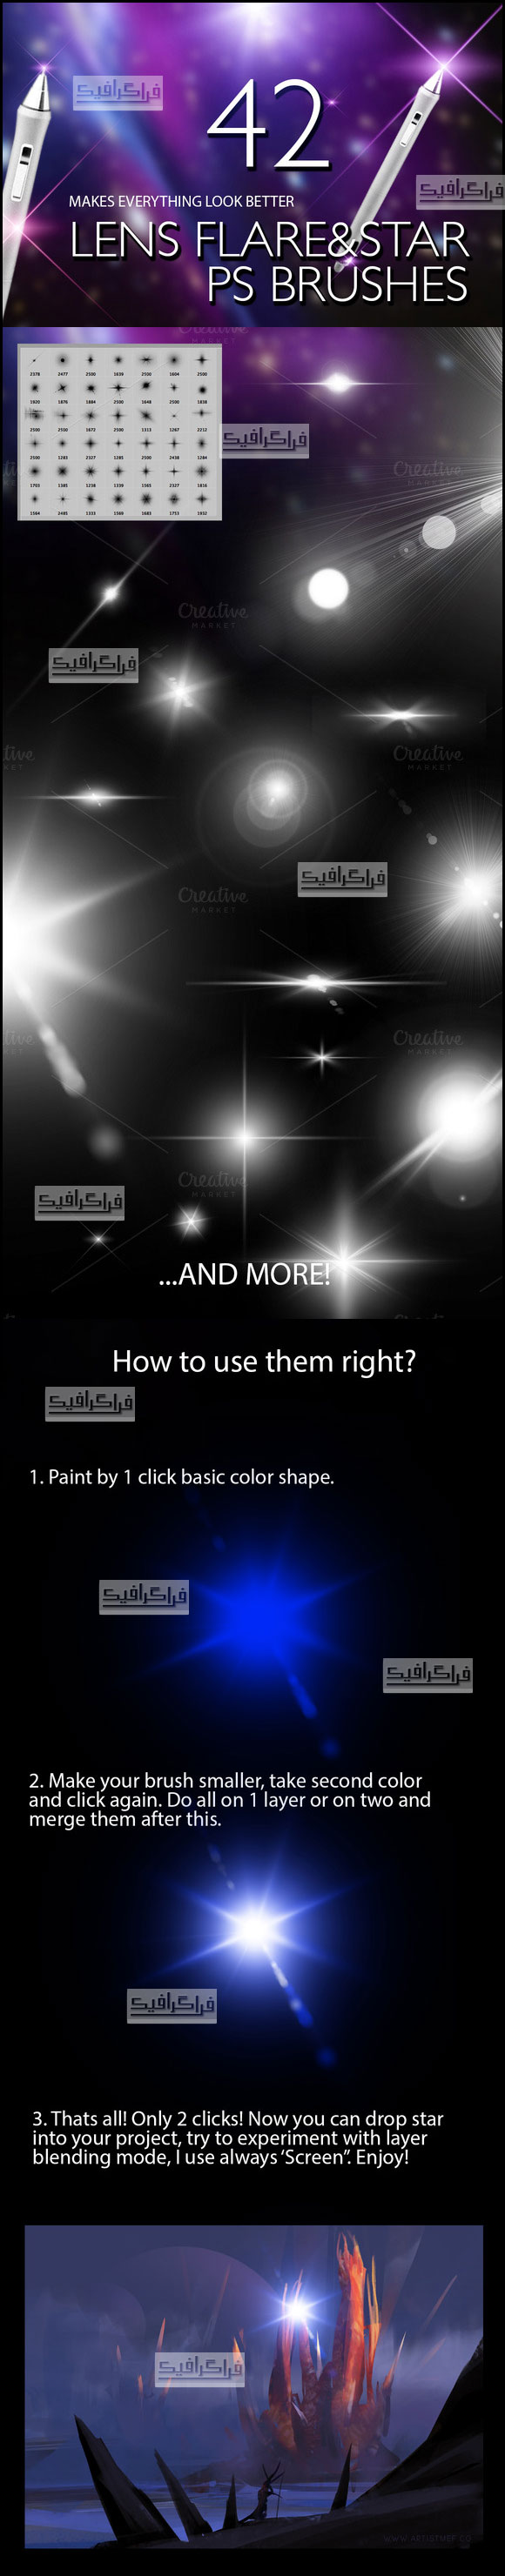 دانلود براش های فتوشاپ نور لنز و ستاره